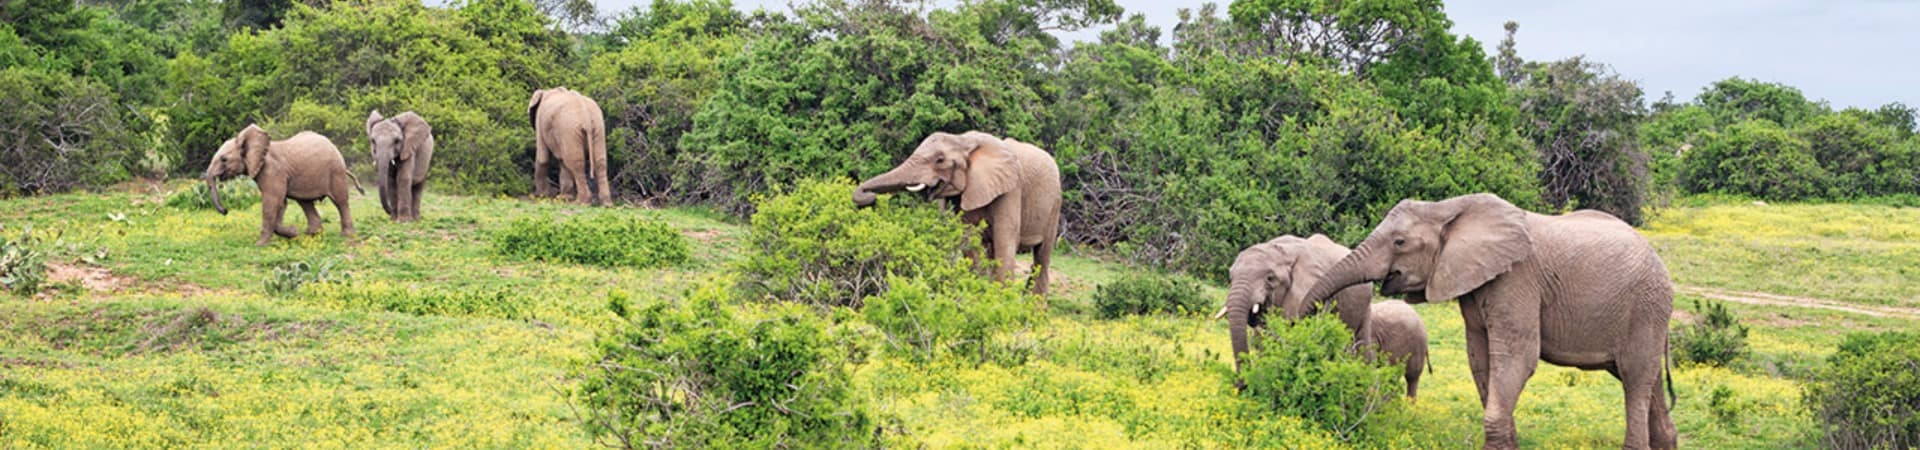 Elefantes safari